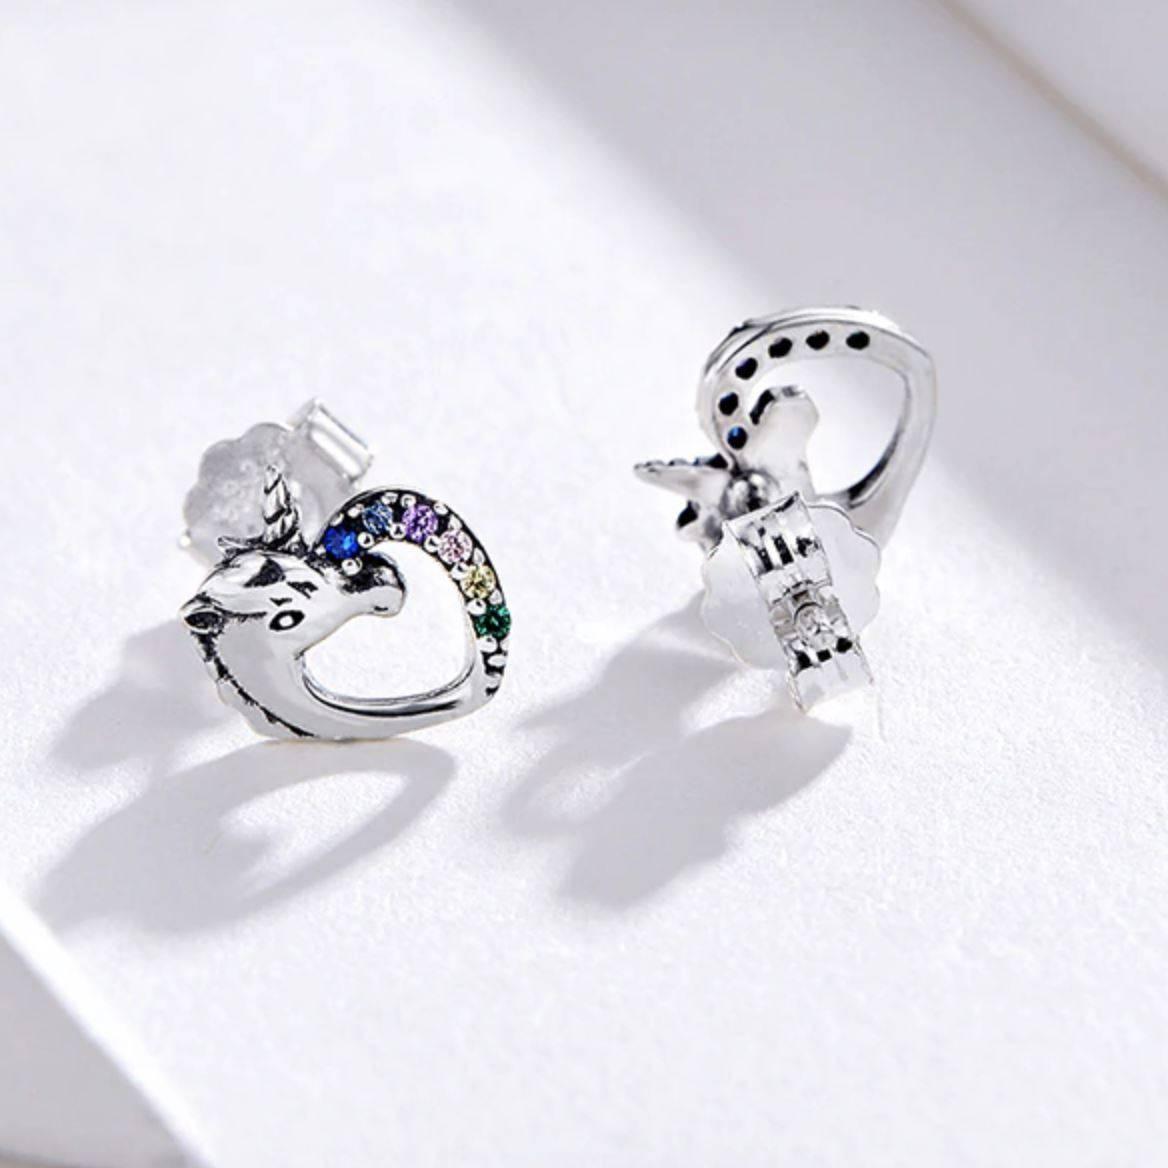 Unicorn earrings In Silver - A Unicorn